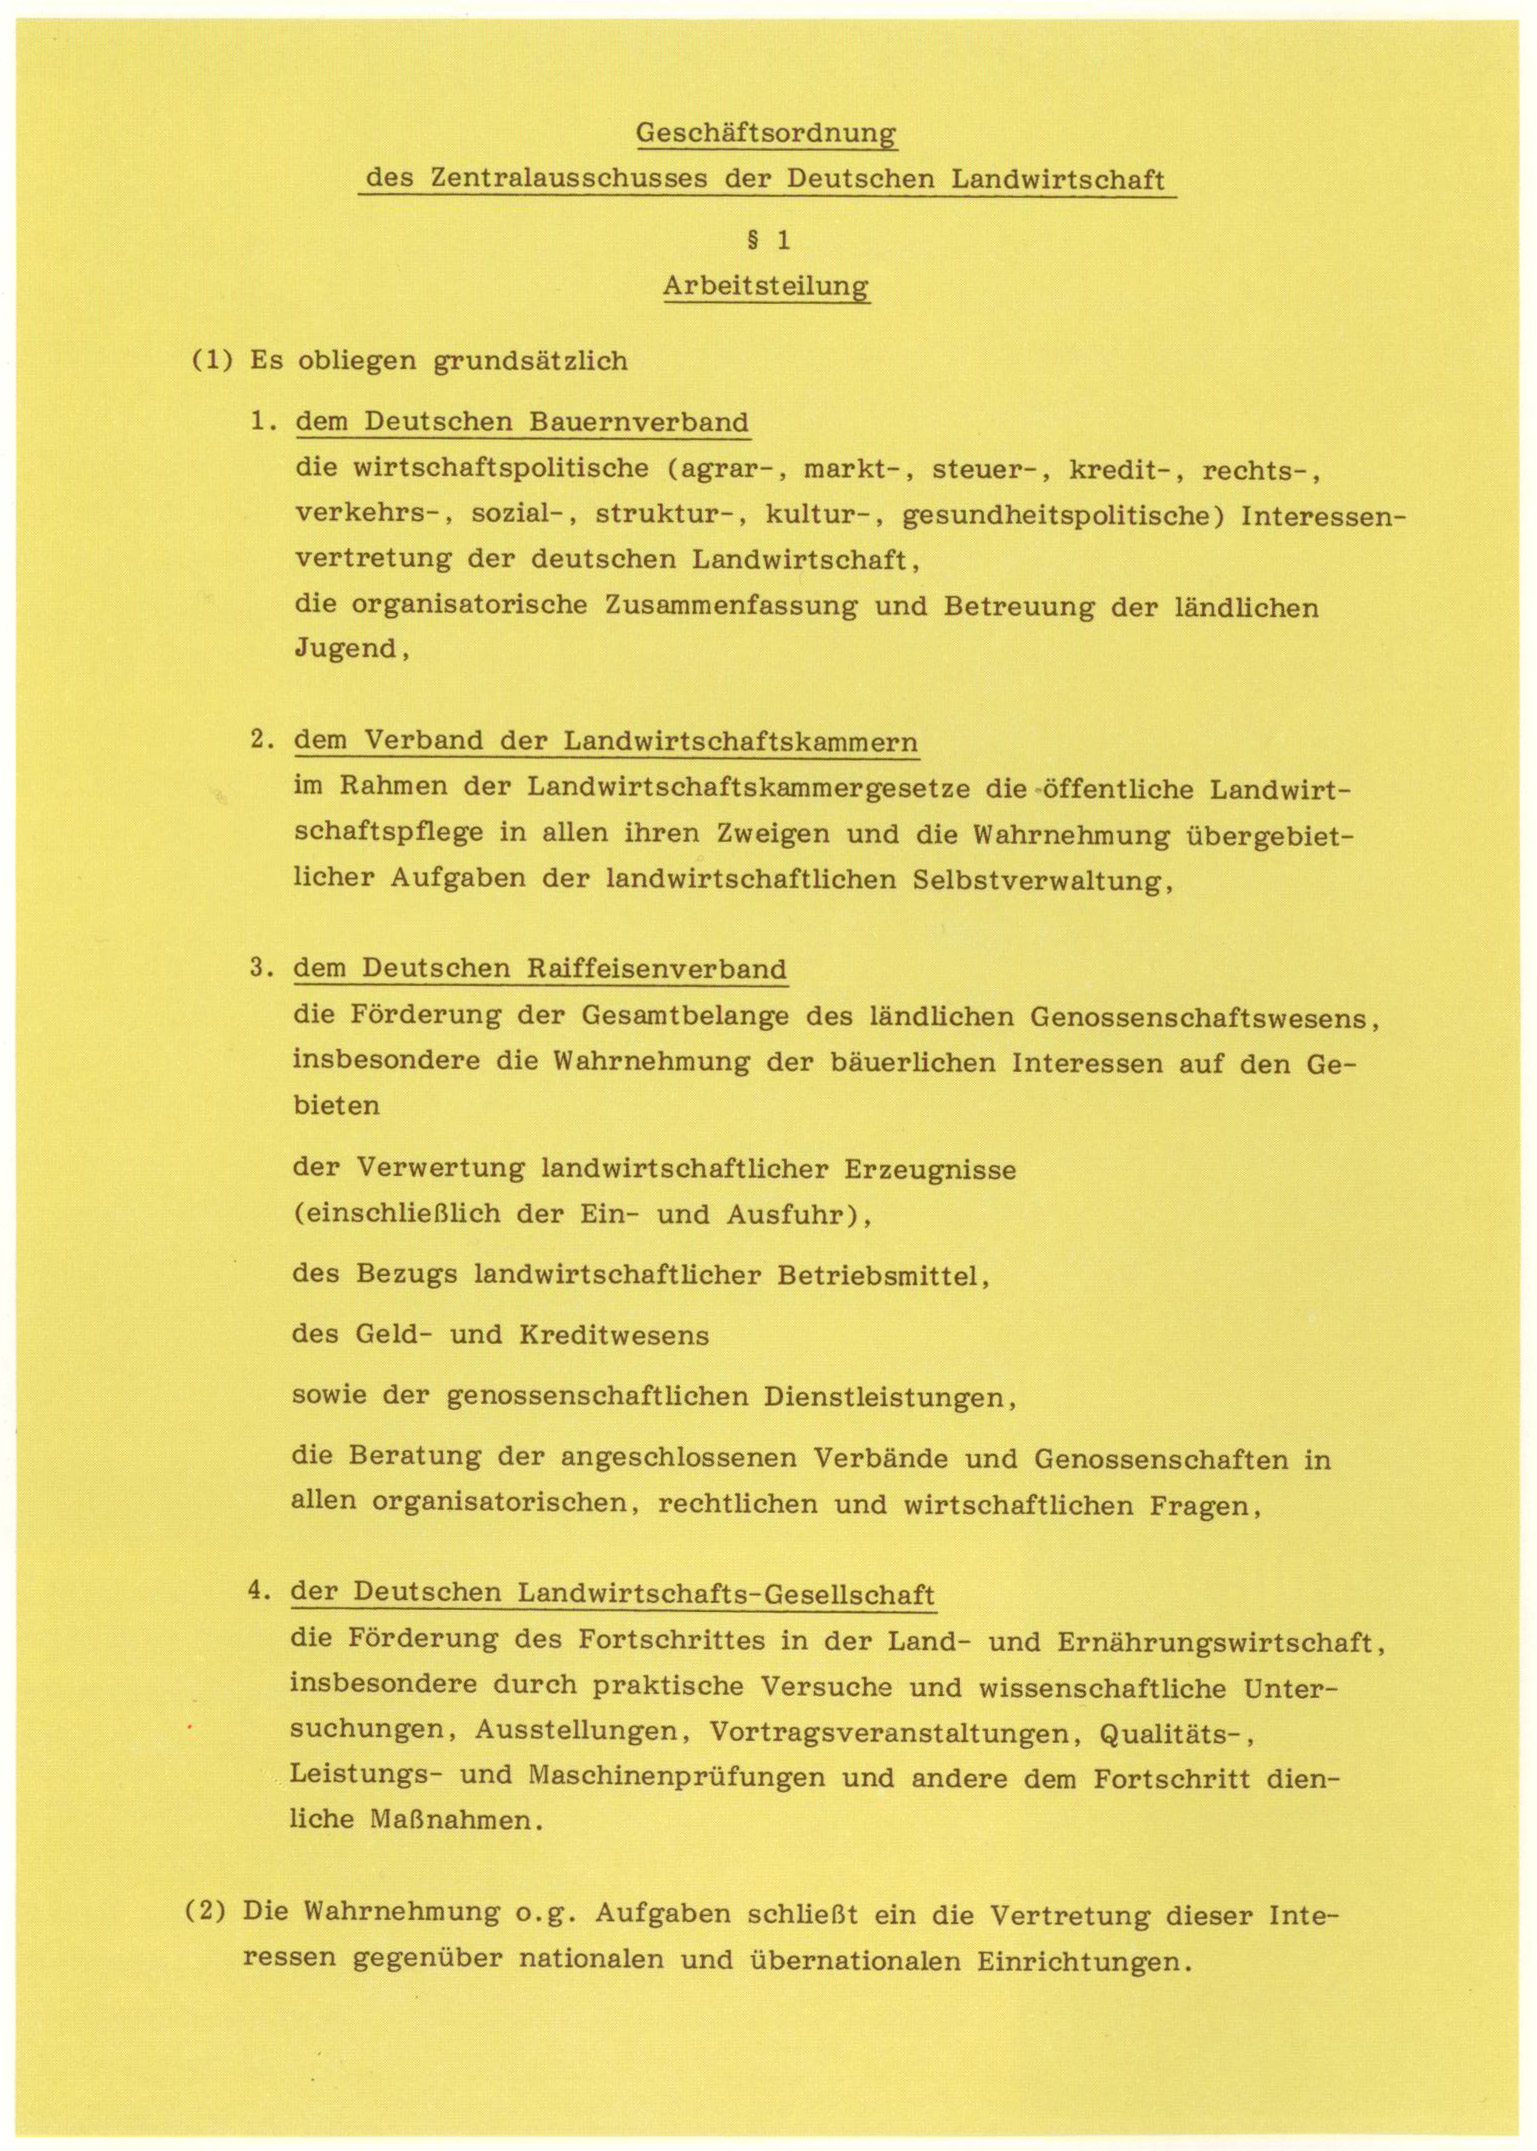 Die Arbeitsteilung nach der Vereinbarung im Zentralausschuss der Deutschen Landwirtschaft 1950